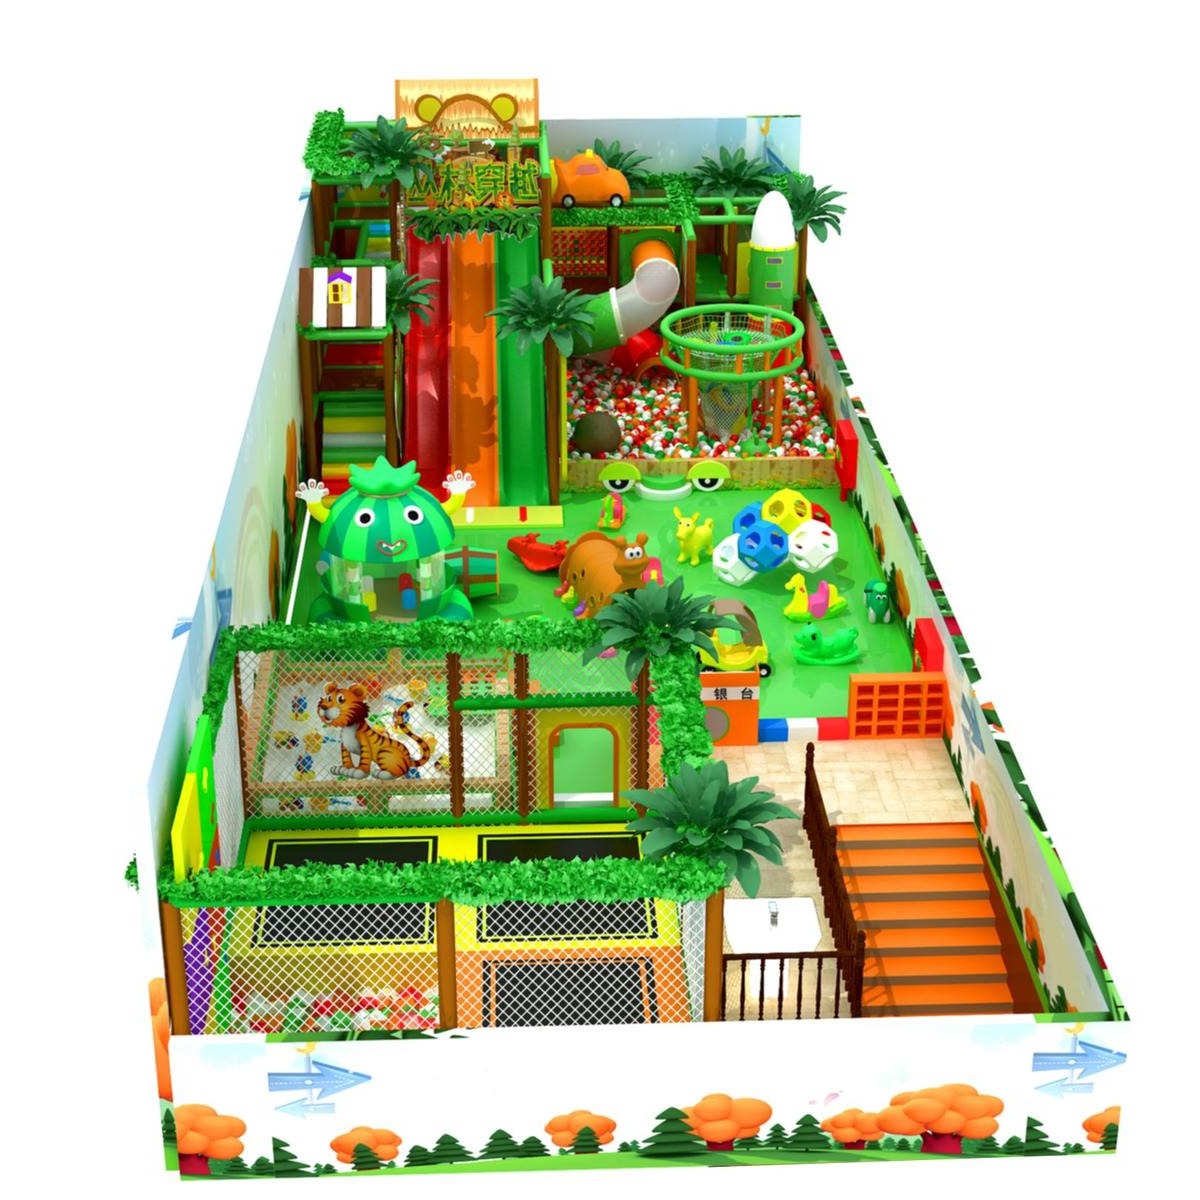 森林系列三层淘气堡   淘气堡设备  淘气堡  儿童乐园设备  蹦床厂家